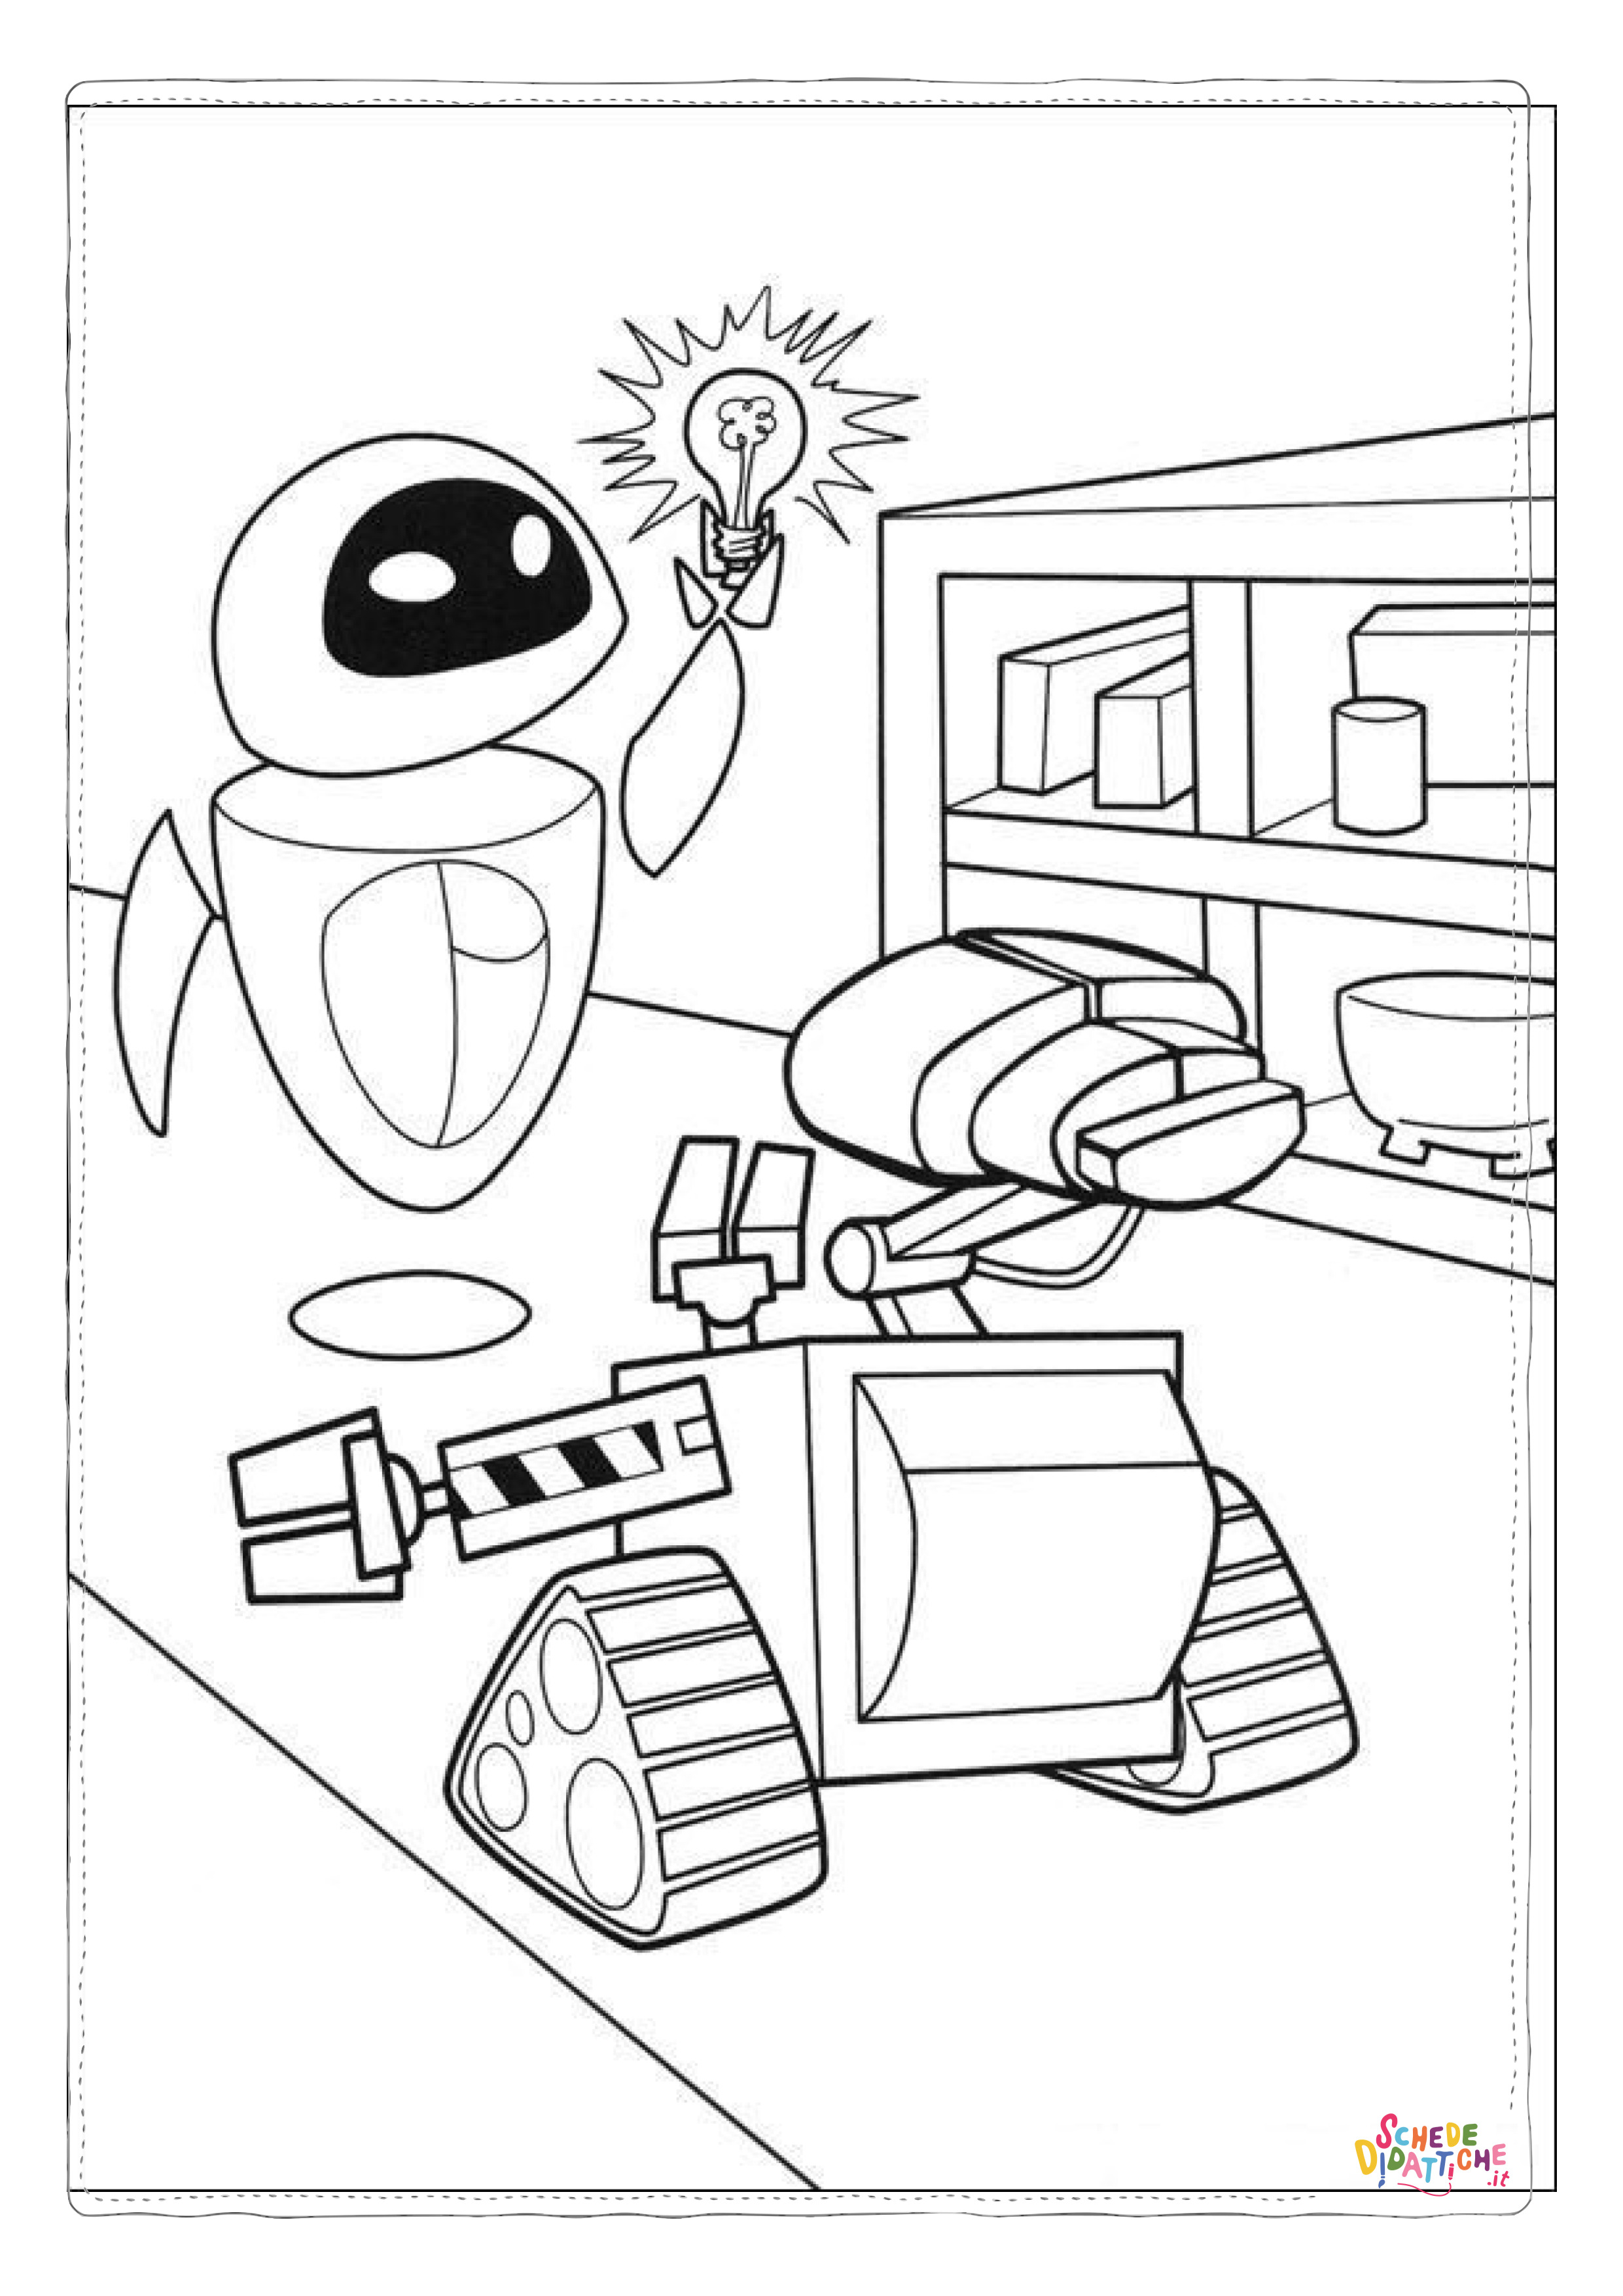 Disegno di Wall-E da stampare e colorare 22